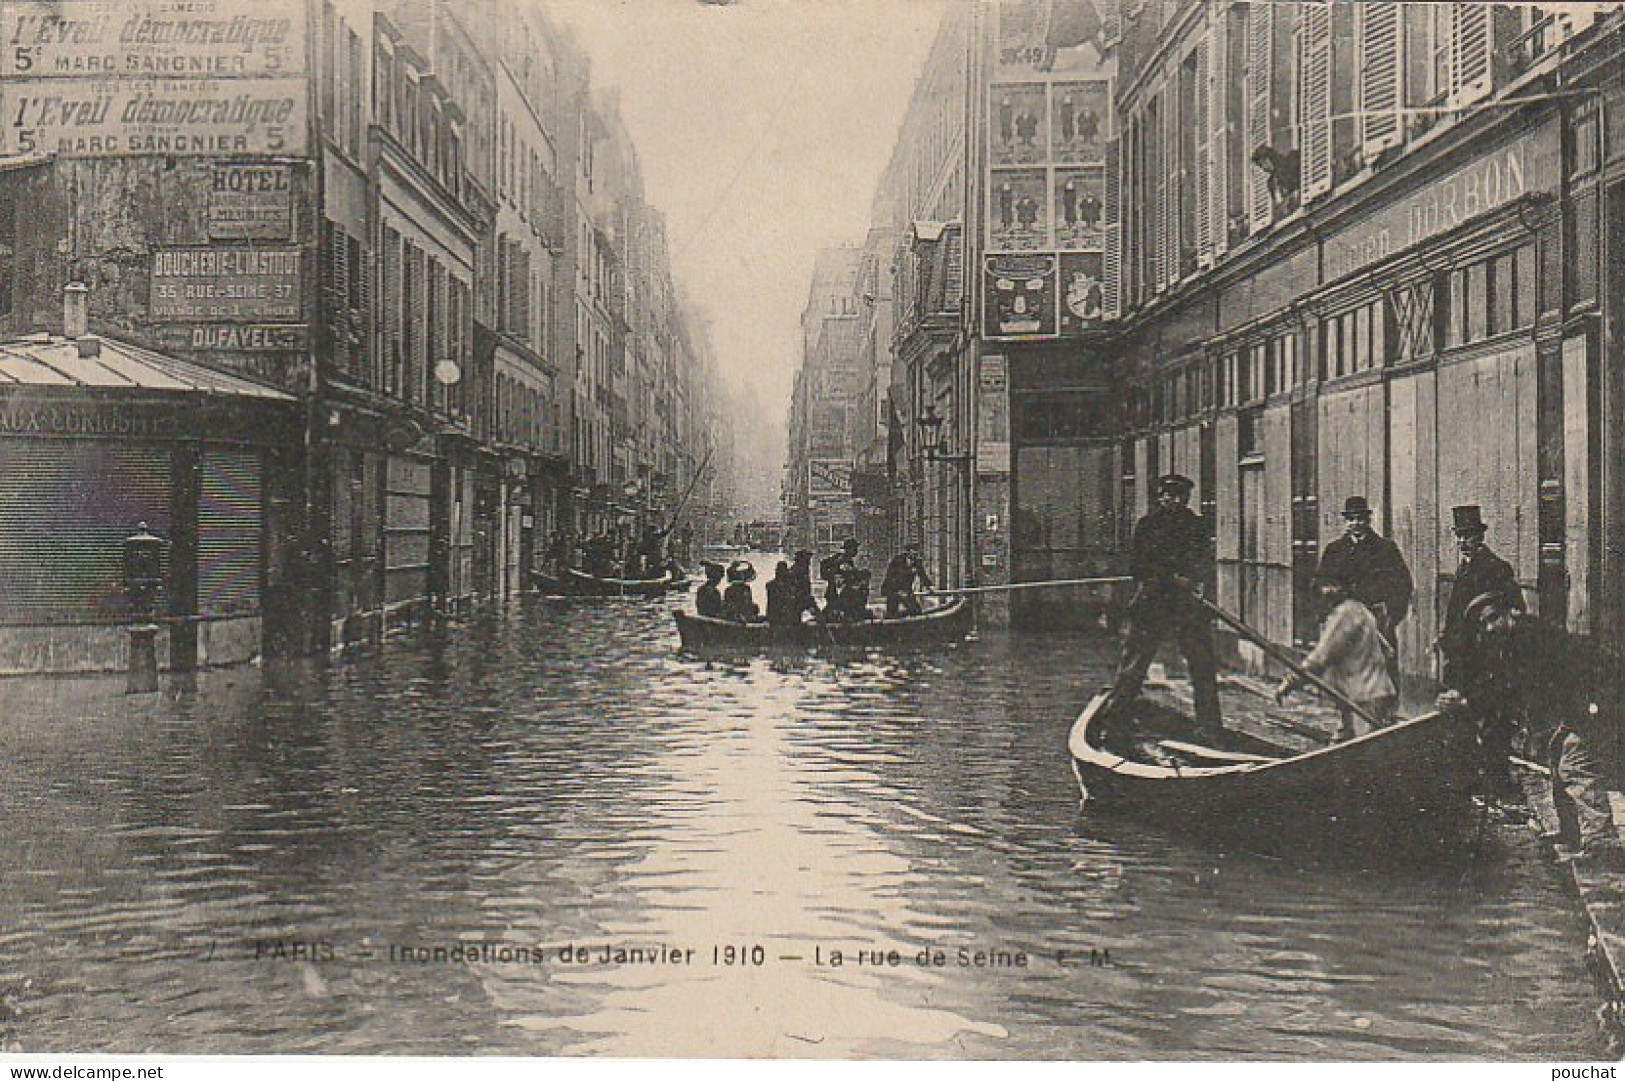 IN 28- (75) PARIS - INONDATIONS DE 1910 - LA RUE DE LA SEINE - BARQUES ET CANOTEURS TRANSPORTANT LES RIVERAINS - 2 SCANS - Paris Flood, 1910